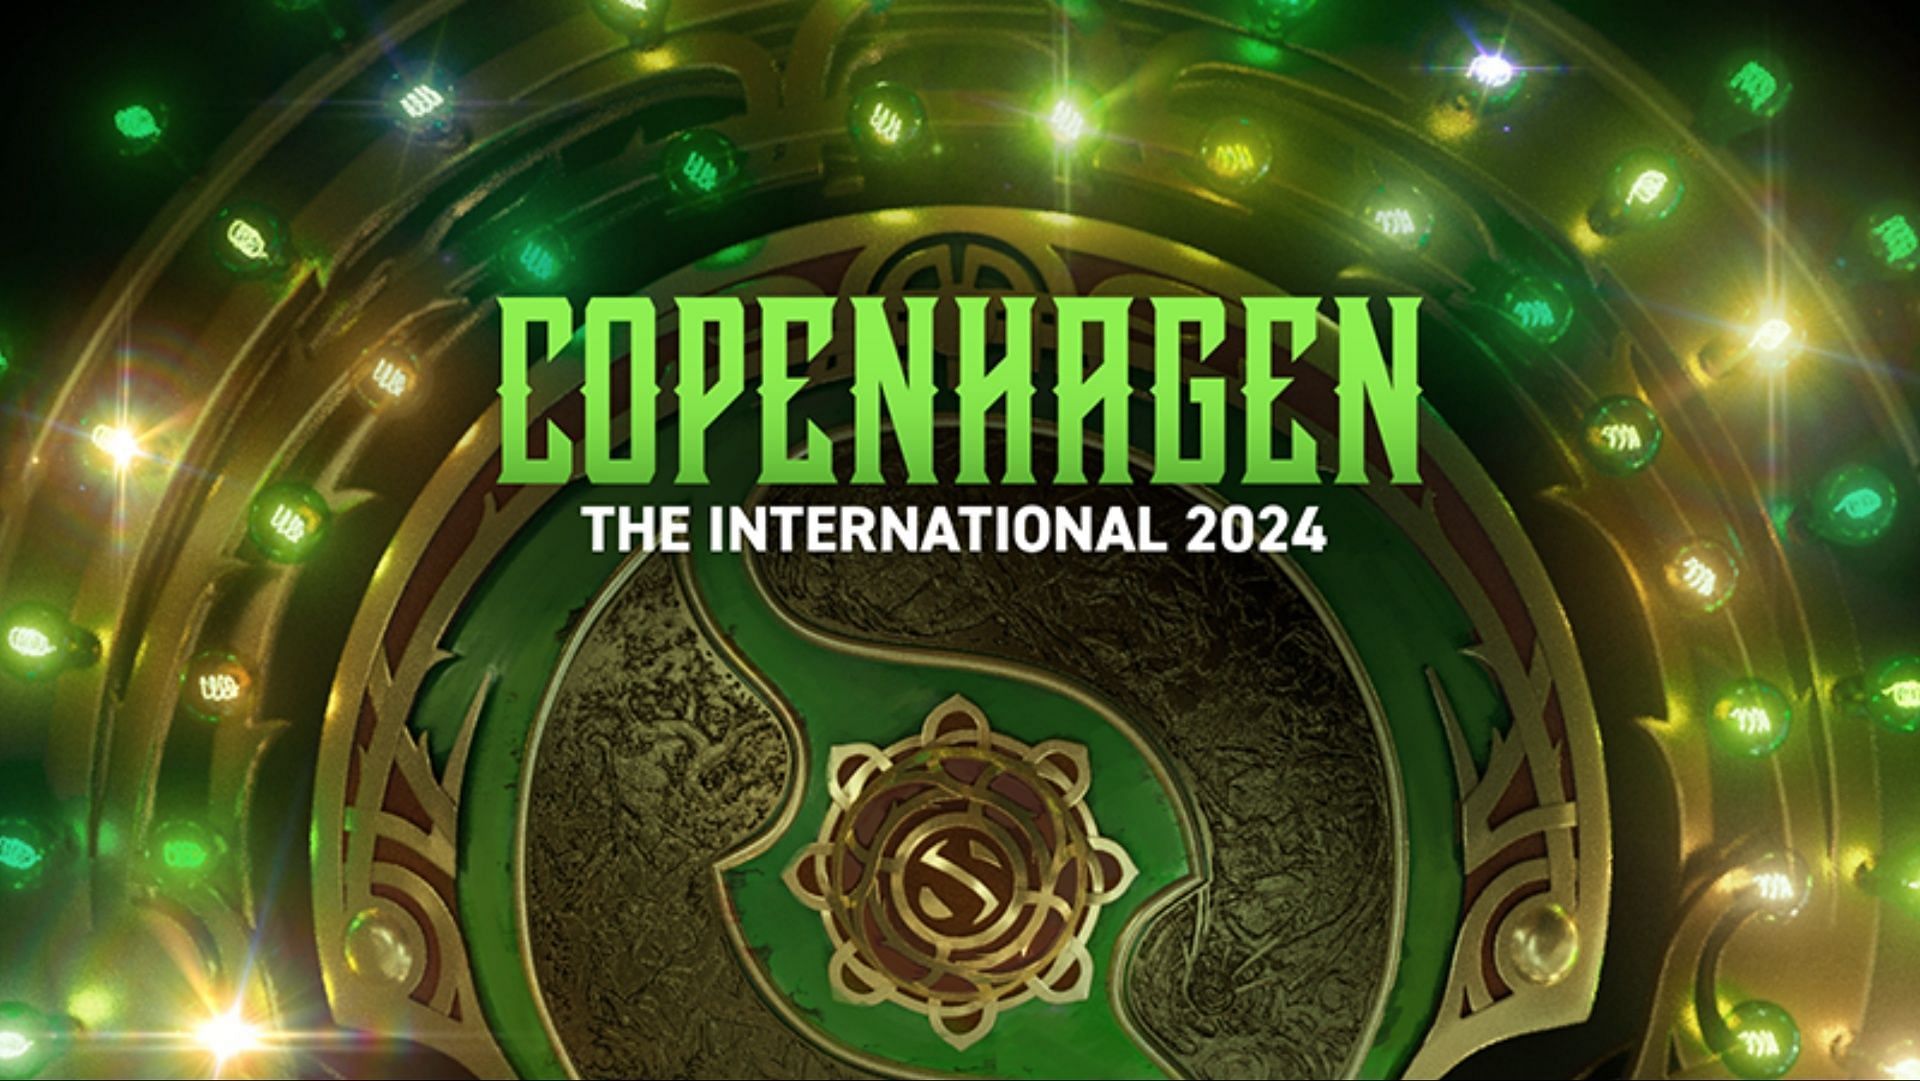 Dota 2 The International 2024 heading to Copenhagen later this September